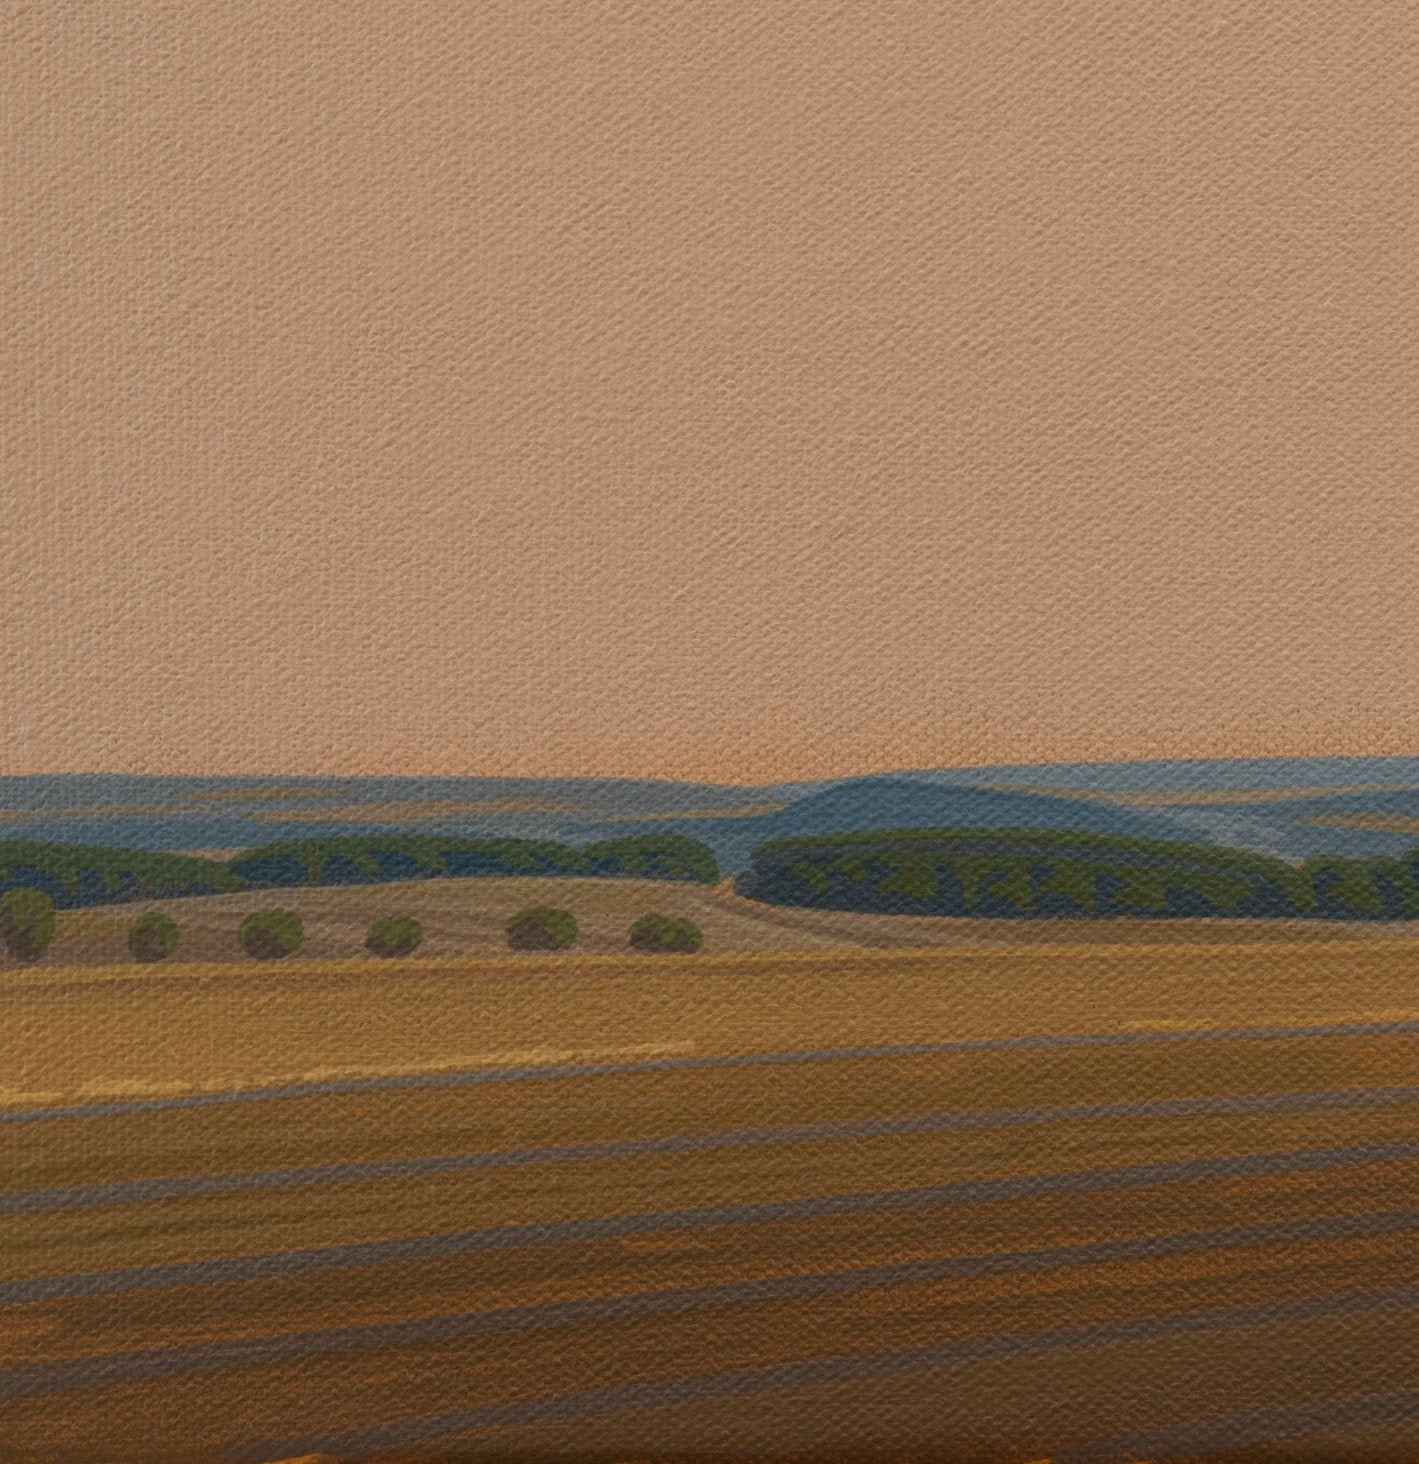 Leinwandbild – Brillanter Kunstdruck – 20x30 cm – uv-beständig – Landschaft mit Baumgruppe